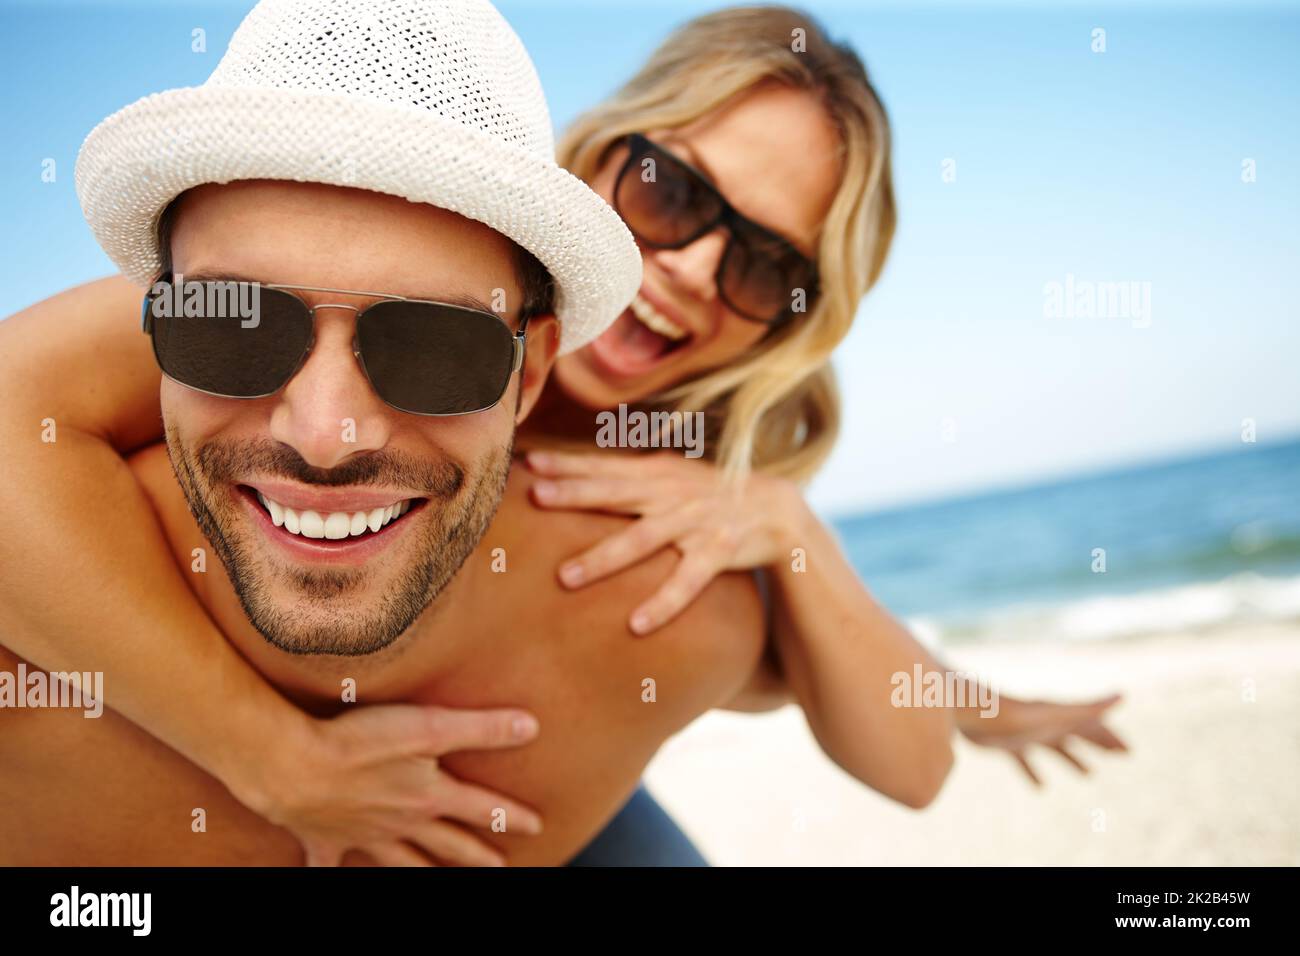 Les meilleures vacances DE MA VIE. Photo d'un jeune homme souriant donnant à sa petite amie en riant un porcyback sur une plage ensoleillée. Banque D'Images